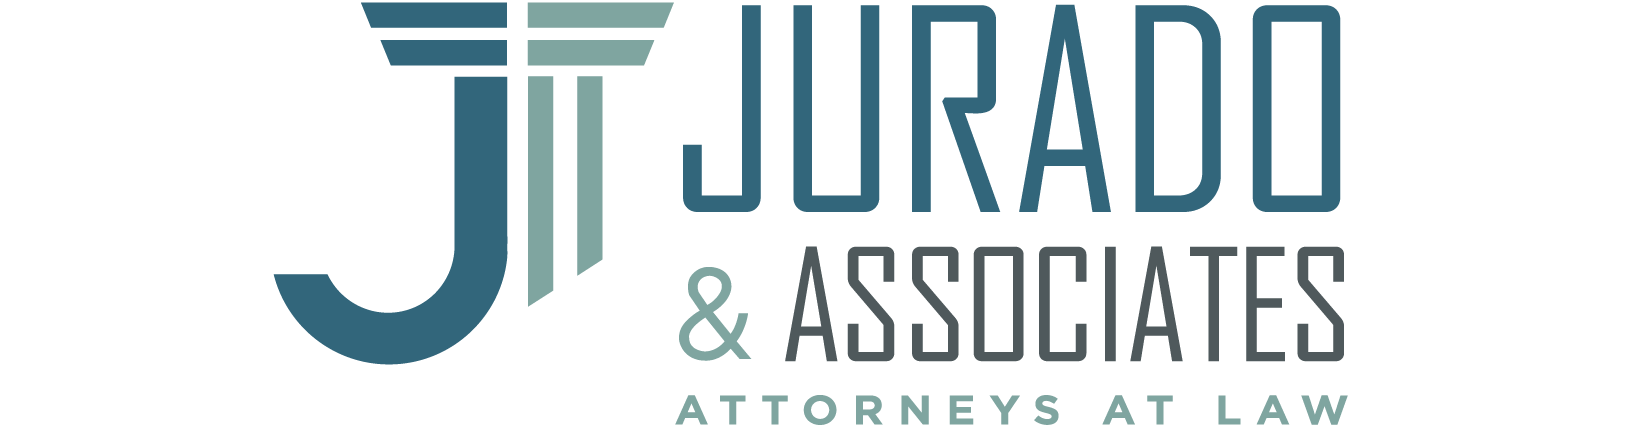 Jurado & Associates, P.A.